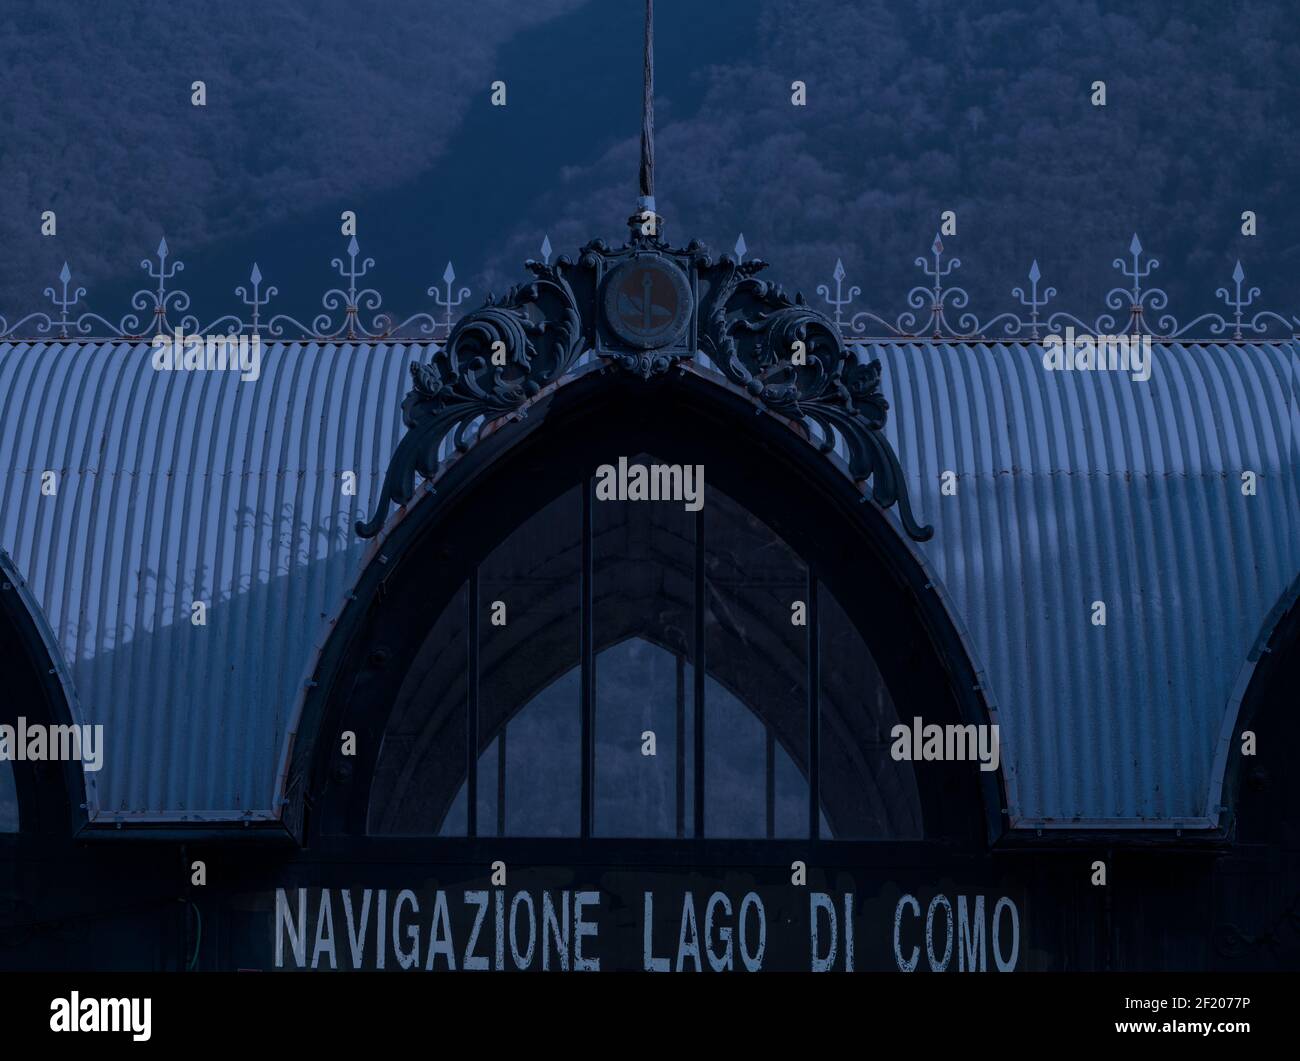 Un bureau de vente de billets romantique art nouveau pour une nuit d'été au clair de lune.Cernobbio,lacs italiens,Lombardie,Italie. Banque D'Images